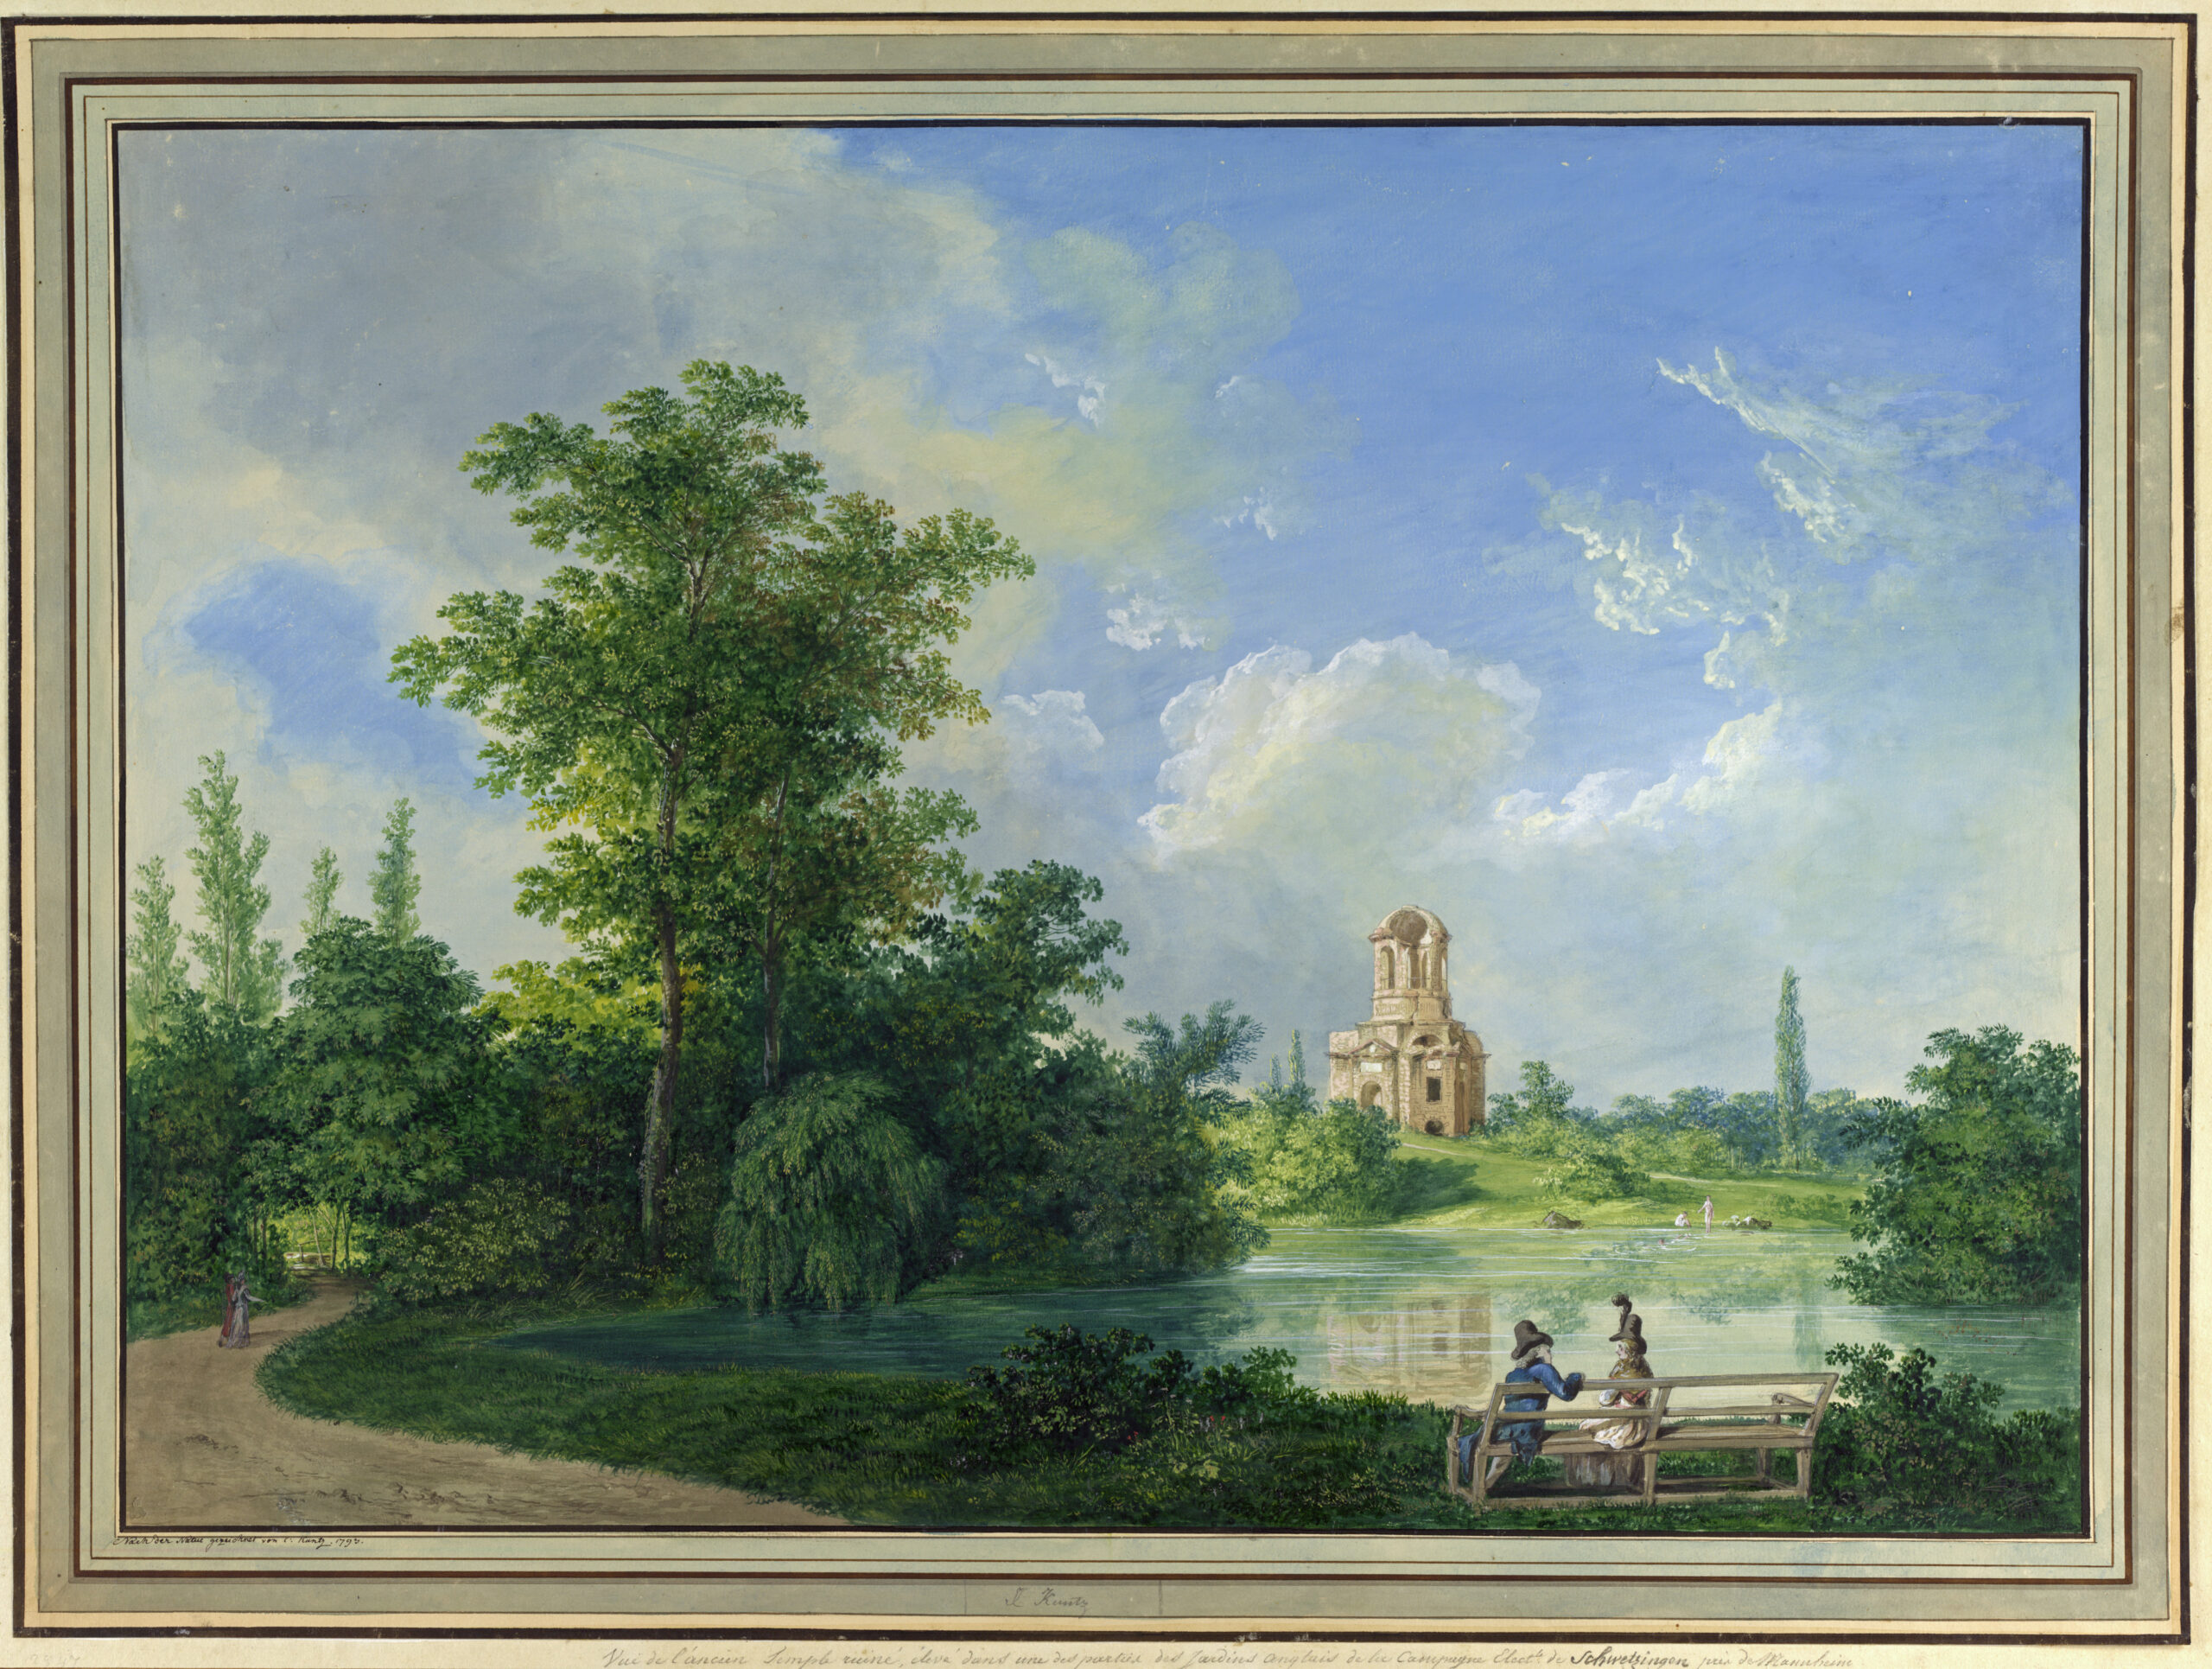 Karl Kuntz, Der Merkurtempel im Park von Schwetzingen, 1795, Albertina Wien, Inv.-Nr. 15076